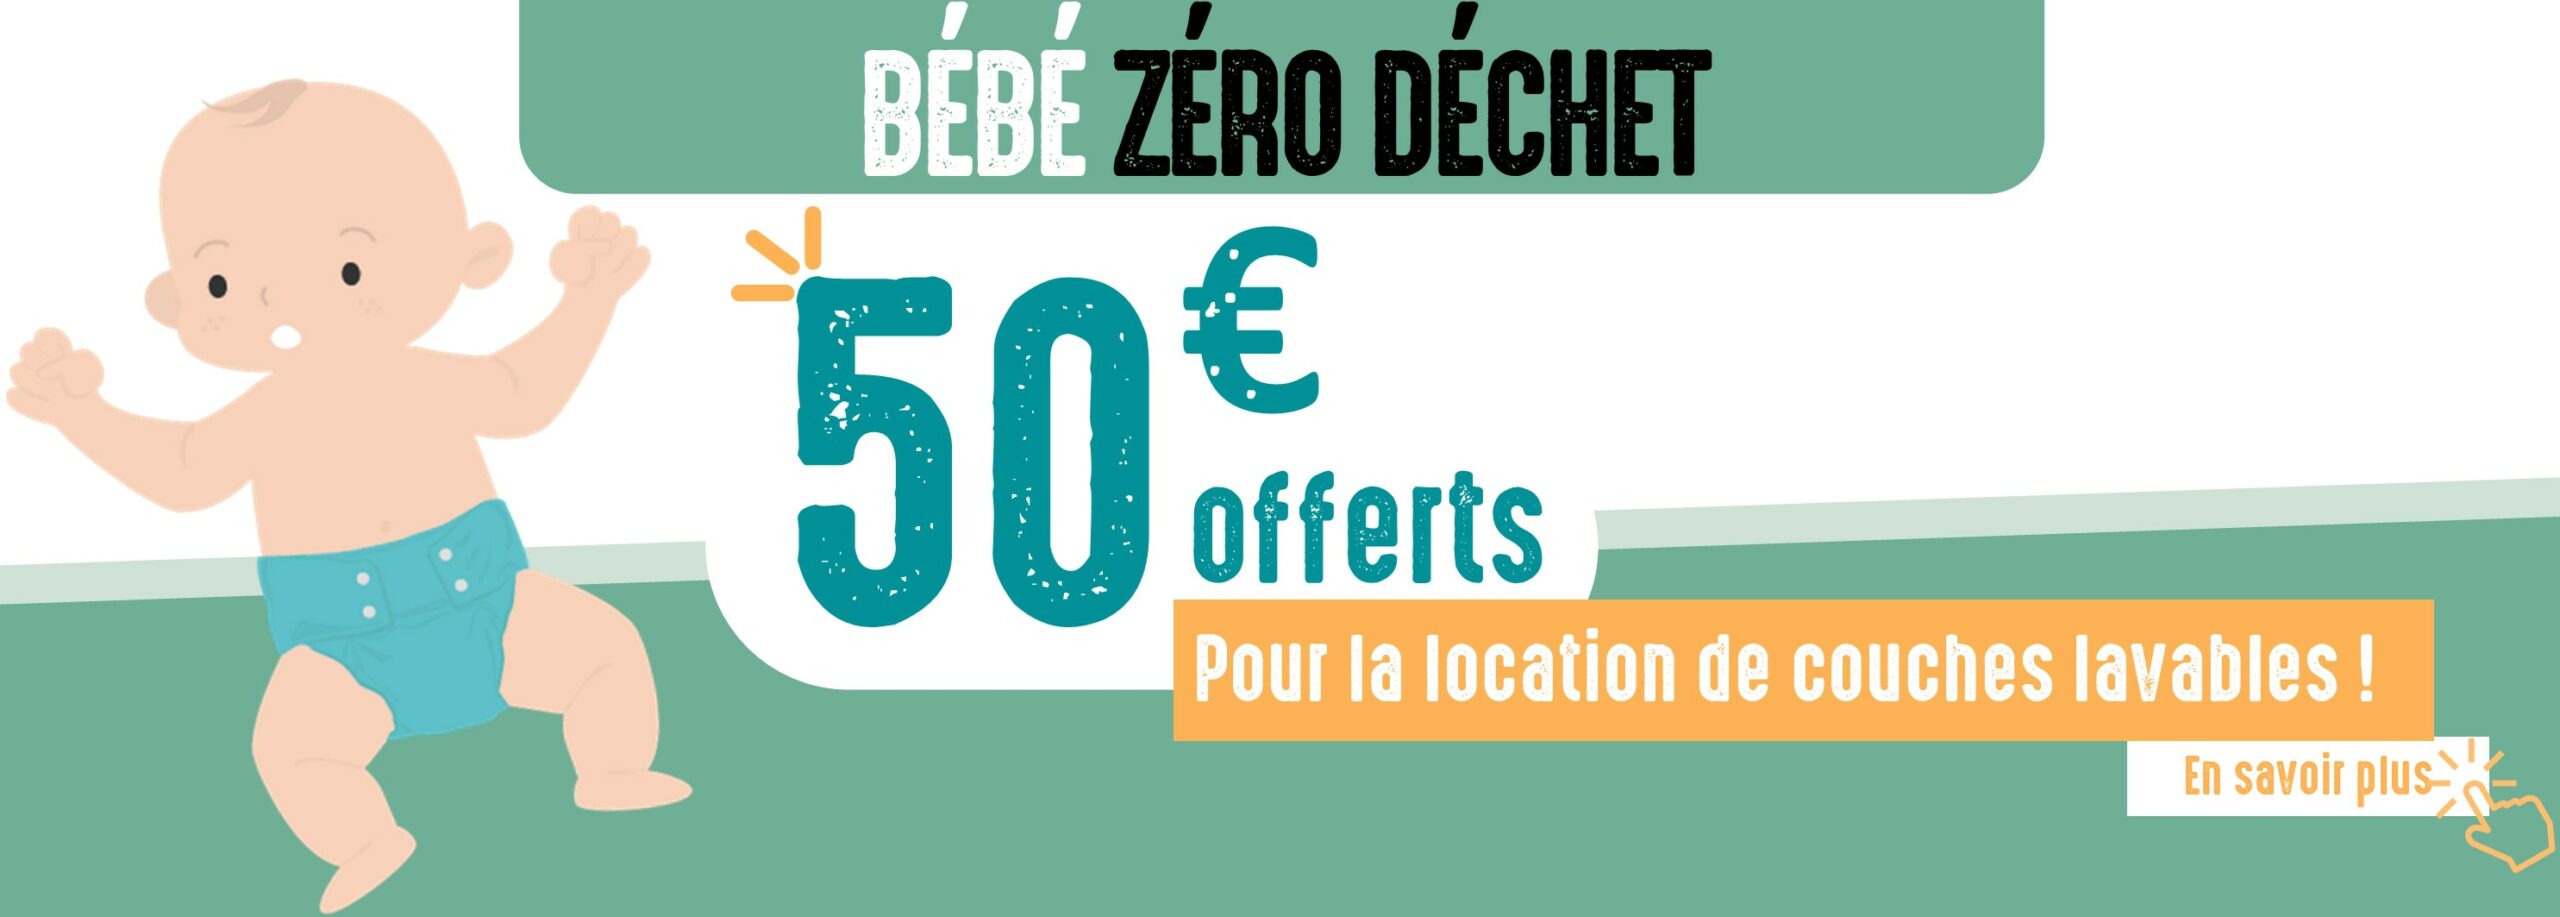 Image présentant un poupon avec une offre de 50 euros pour la location de couches lavables